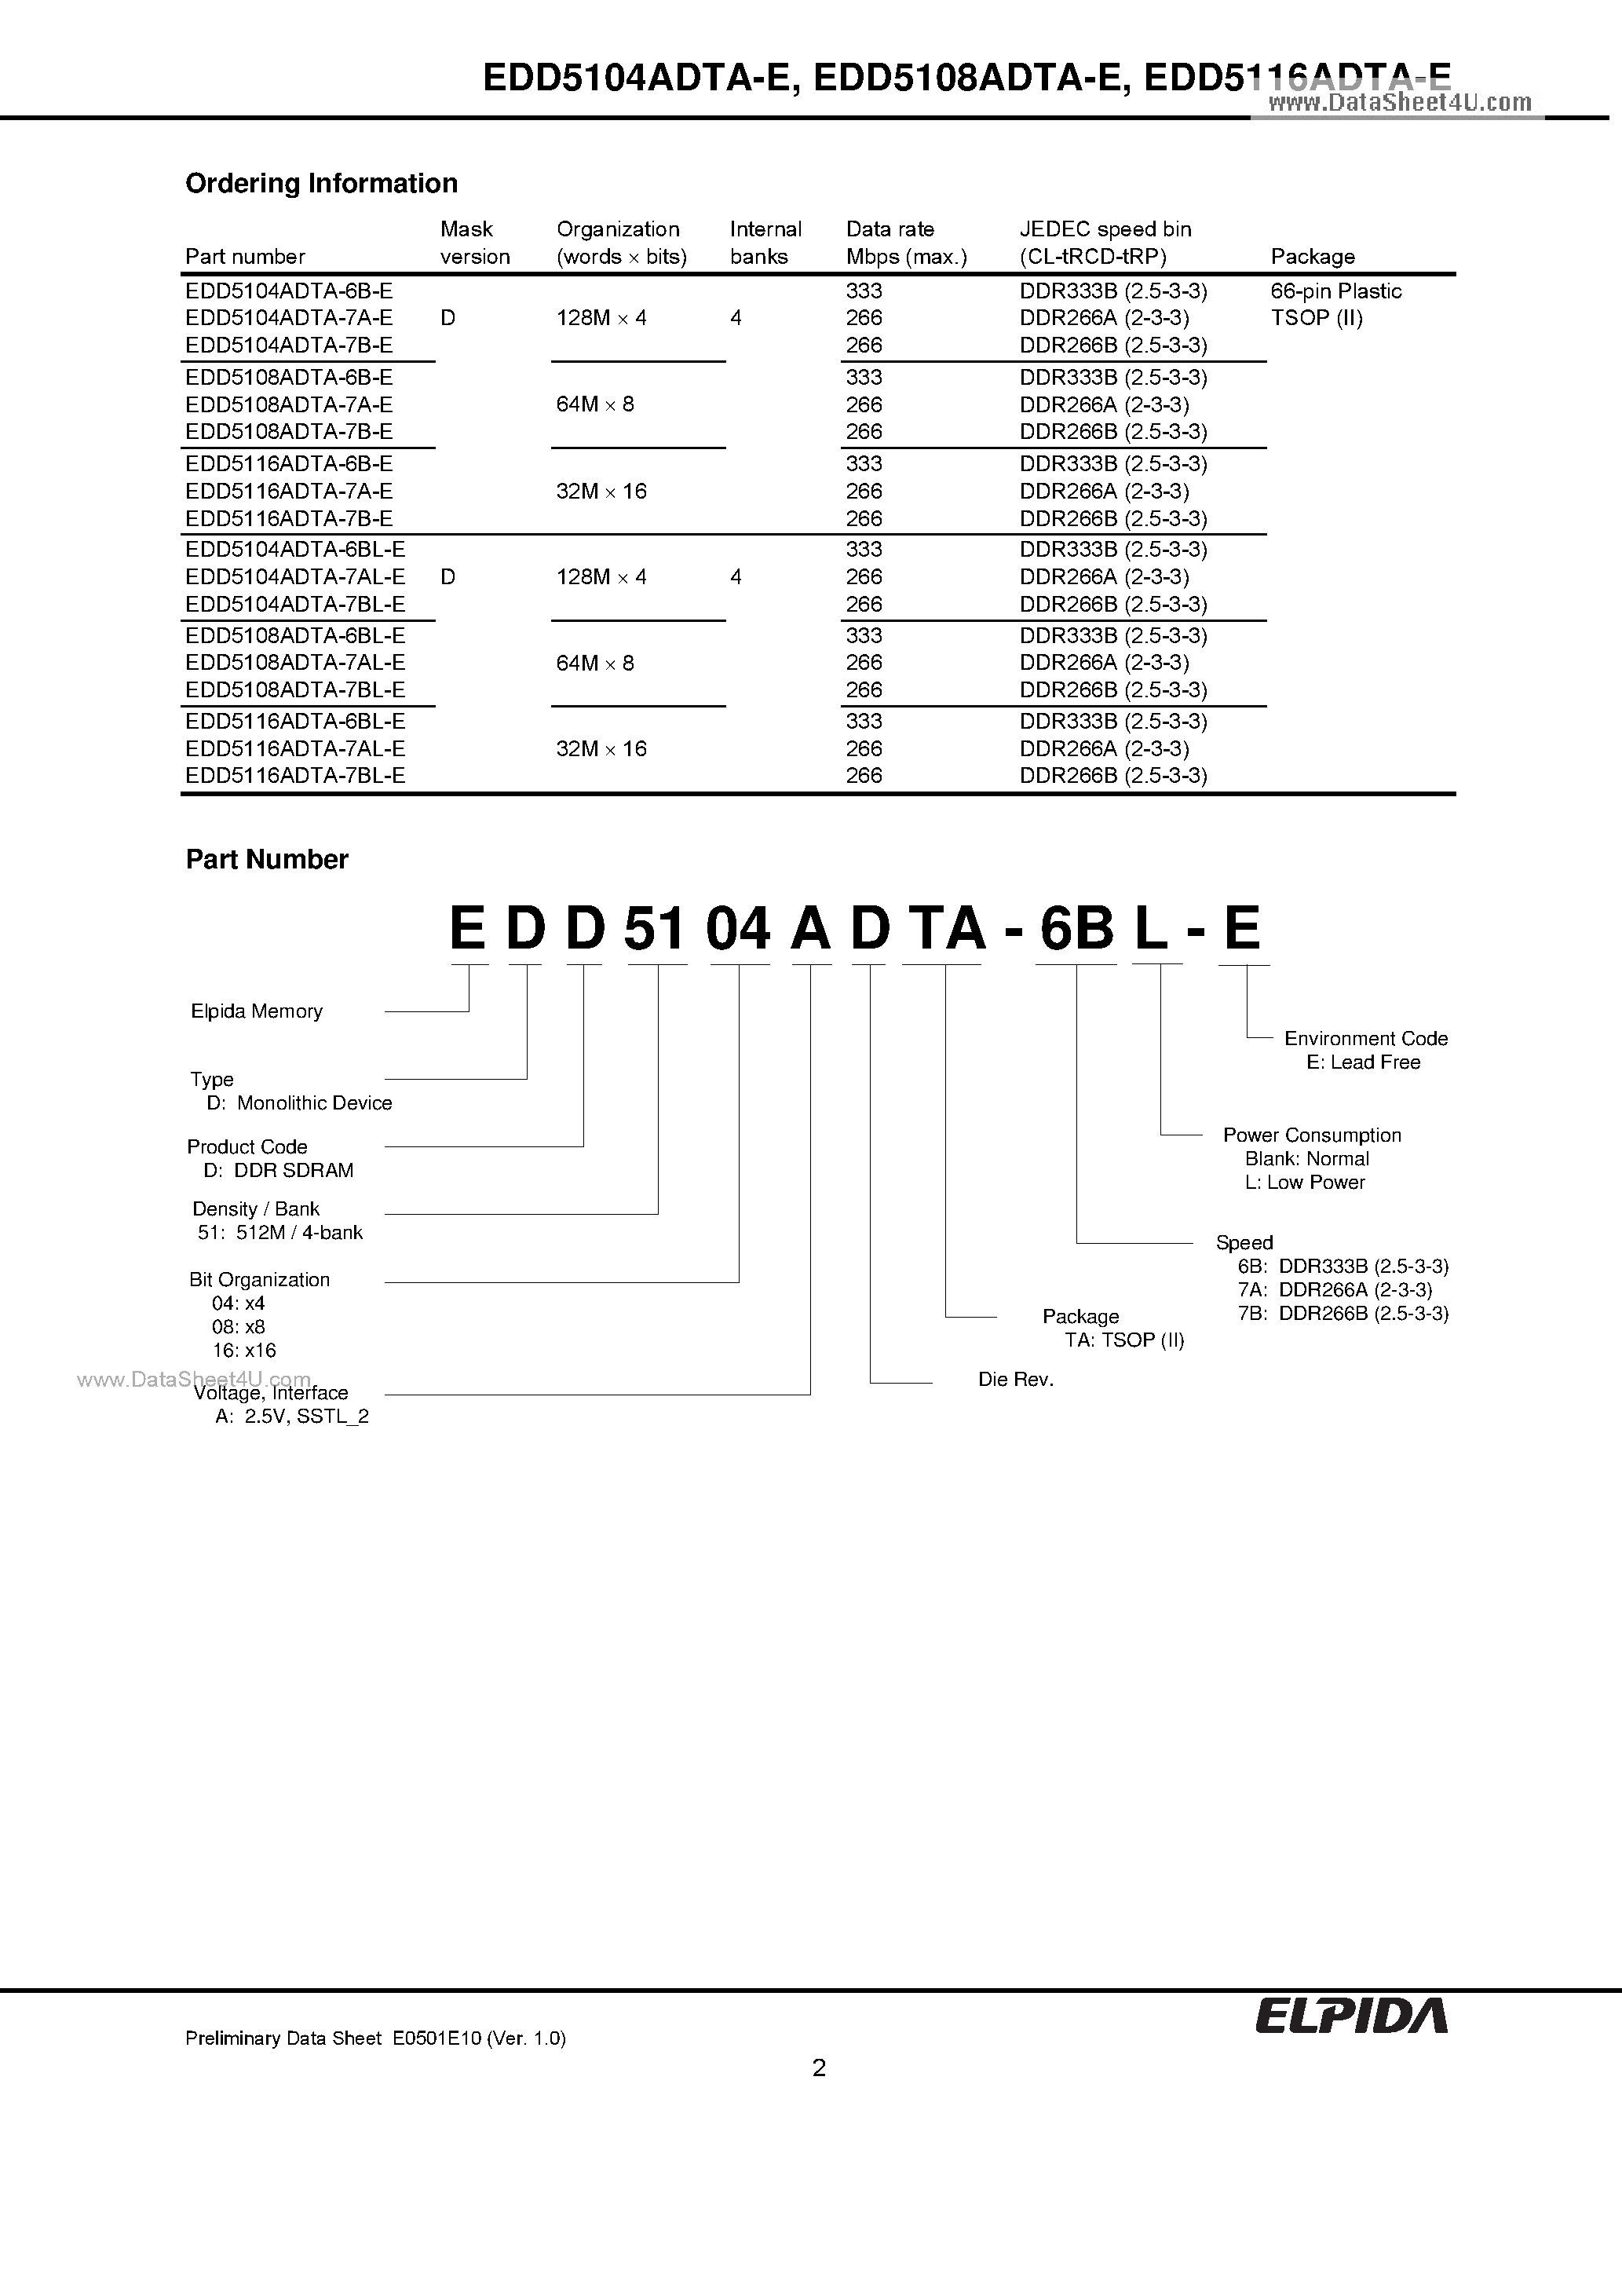 Даташит EDD5104ADTA-E - 512M bits DDR SDRAM страница 2